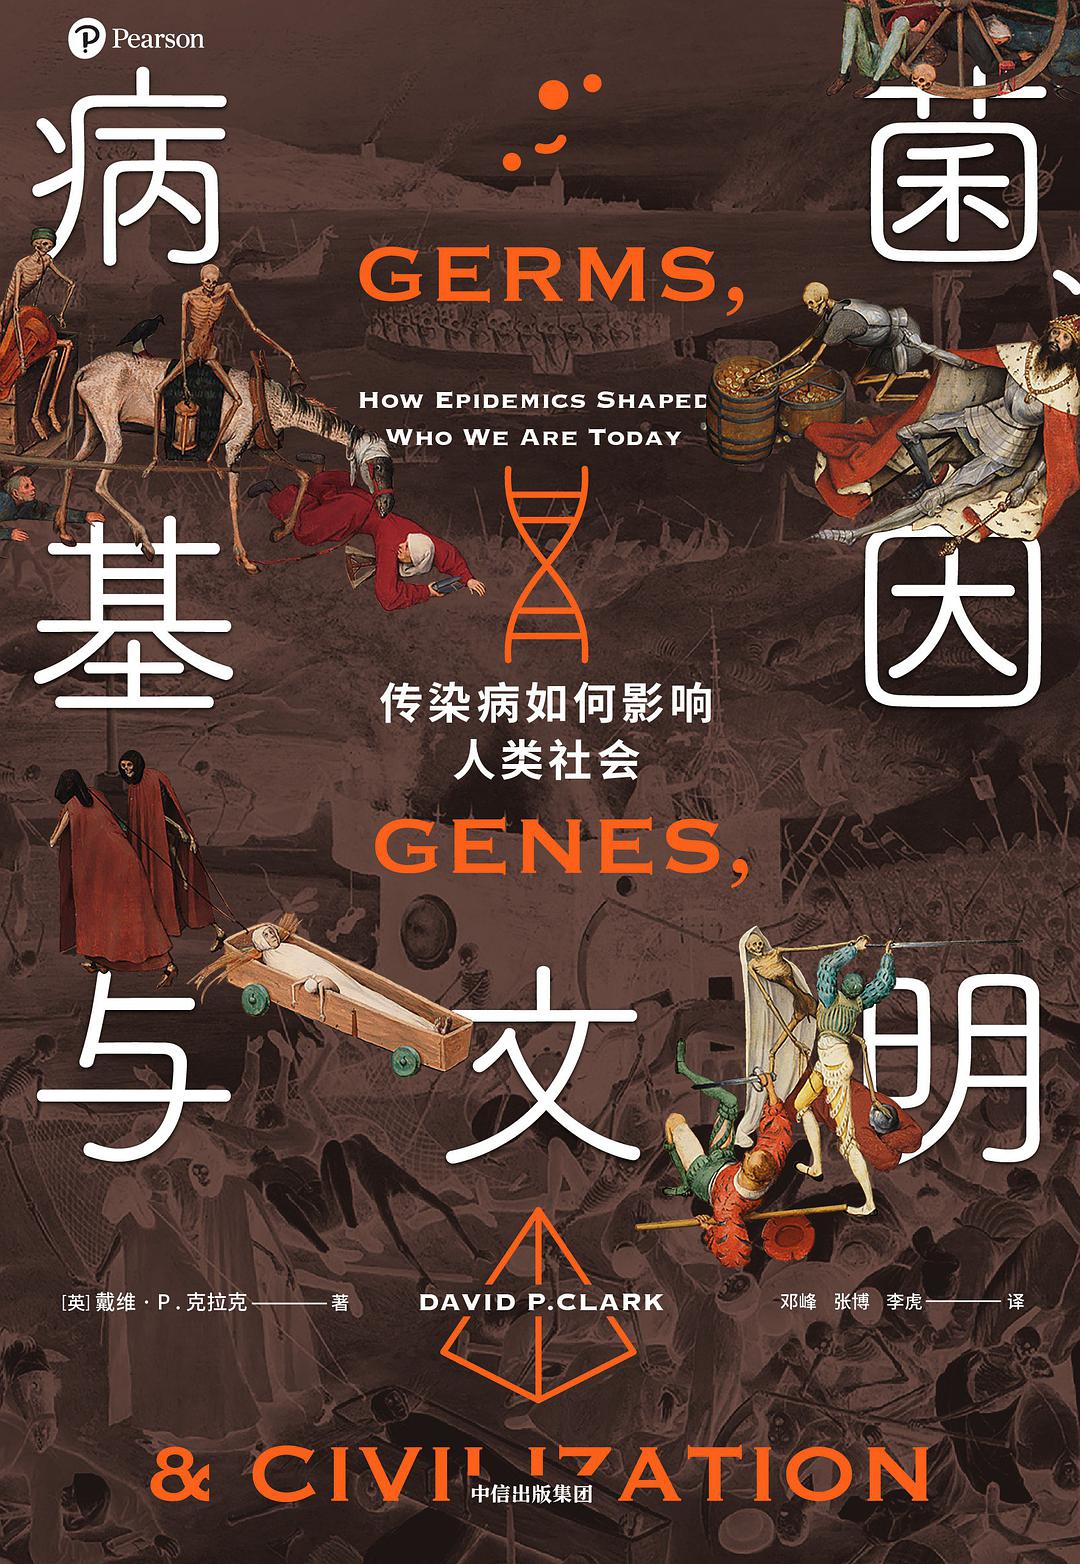 病菌、基因与文明-好书天下